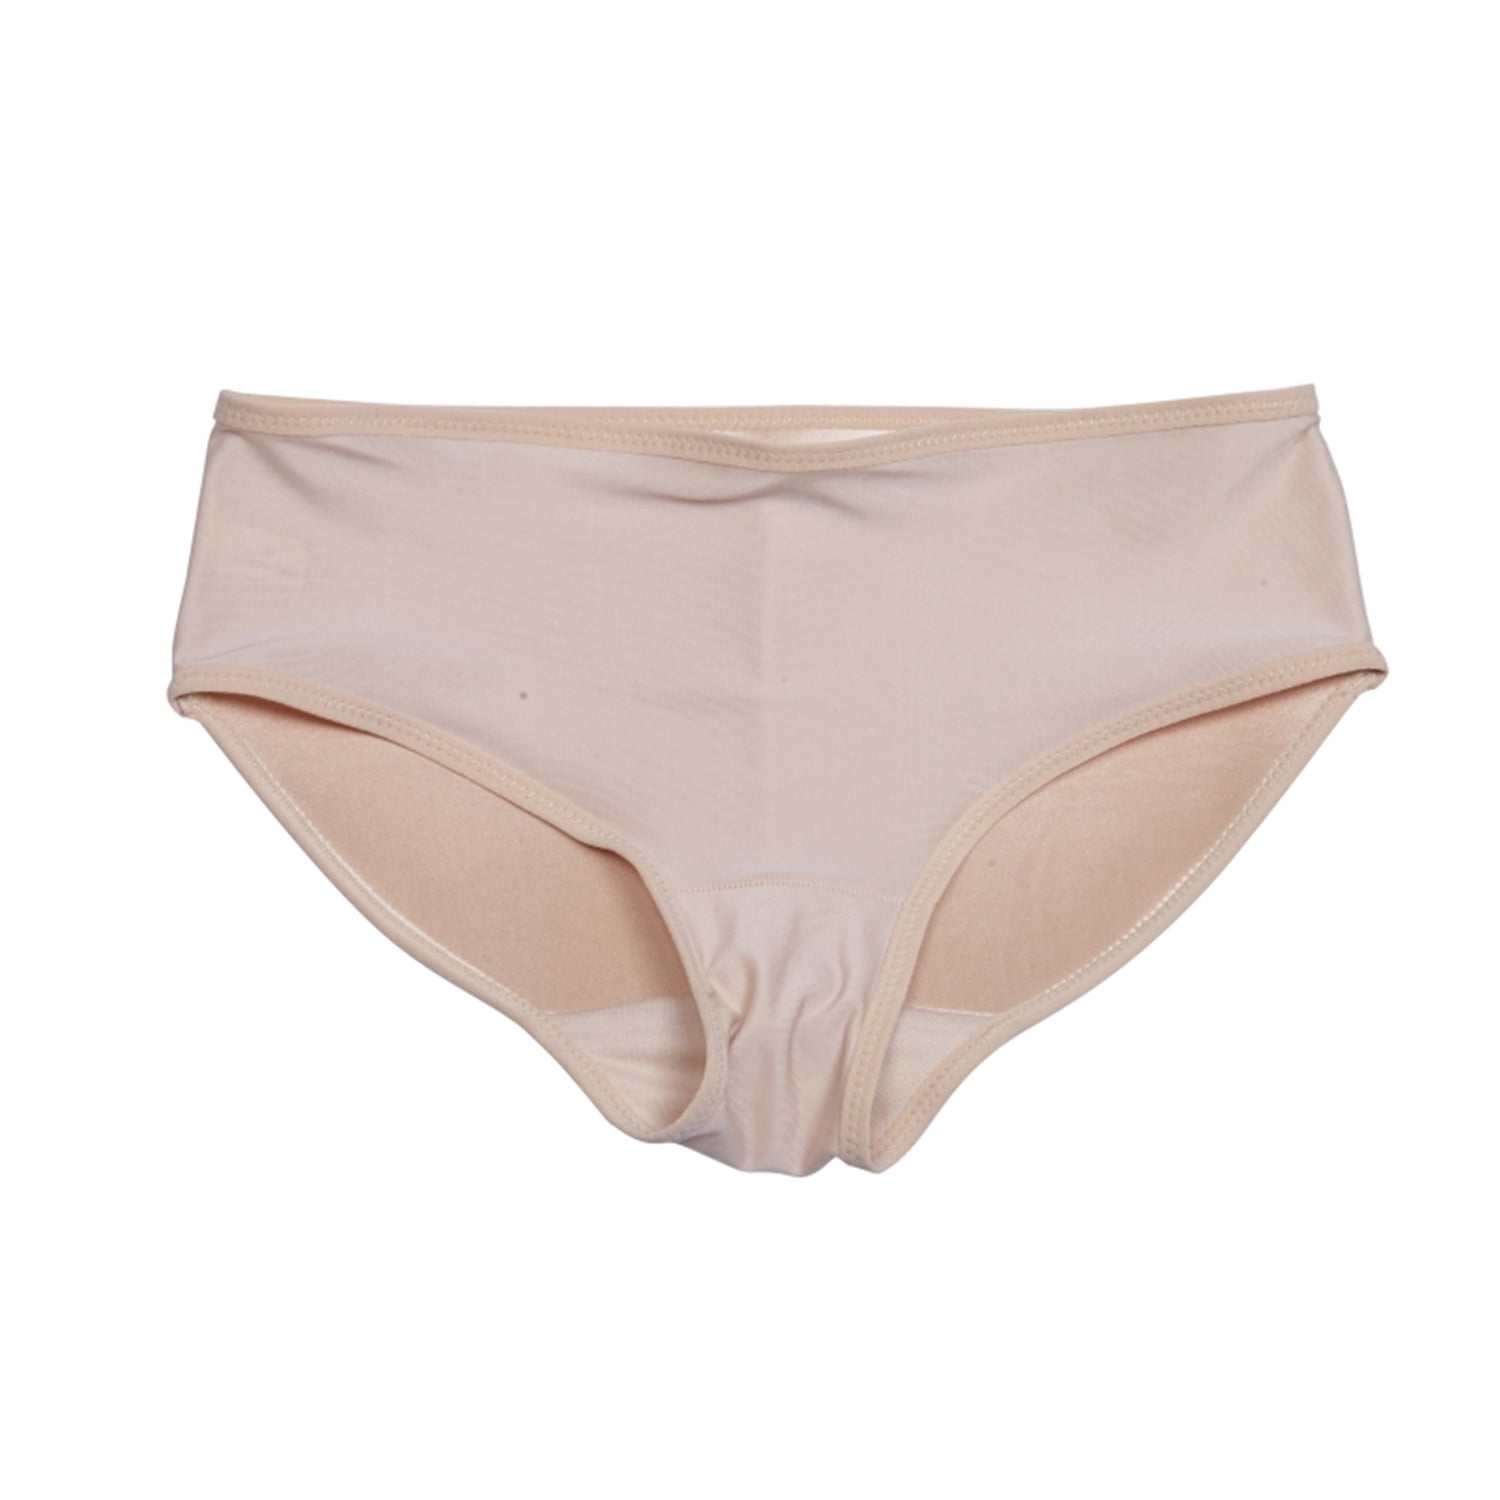 Women Butt Lifter Underwear Booty Enhancer Hipster Panty With Foam Butt Pads  Beige Xxl price in UAE,  UAE